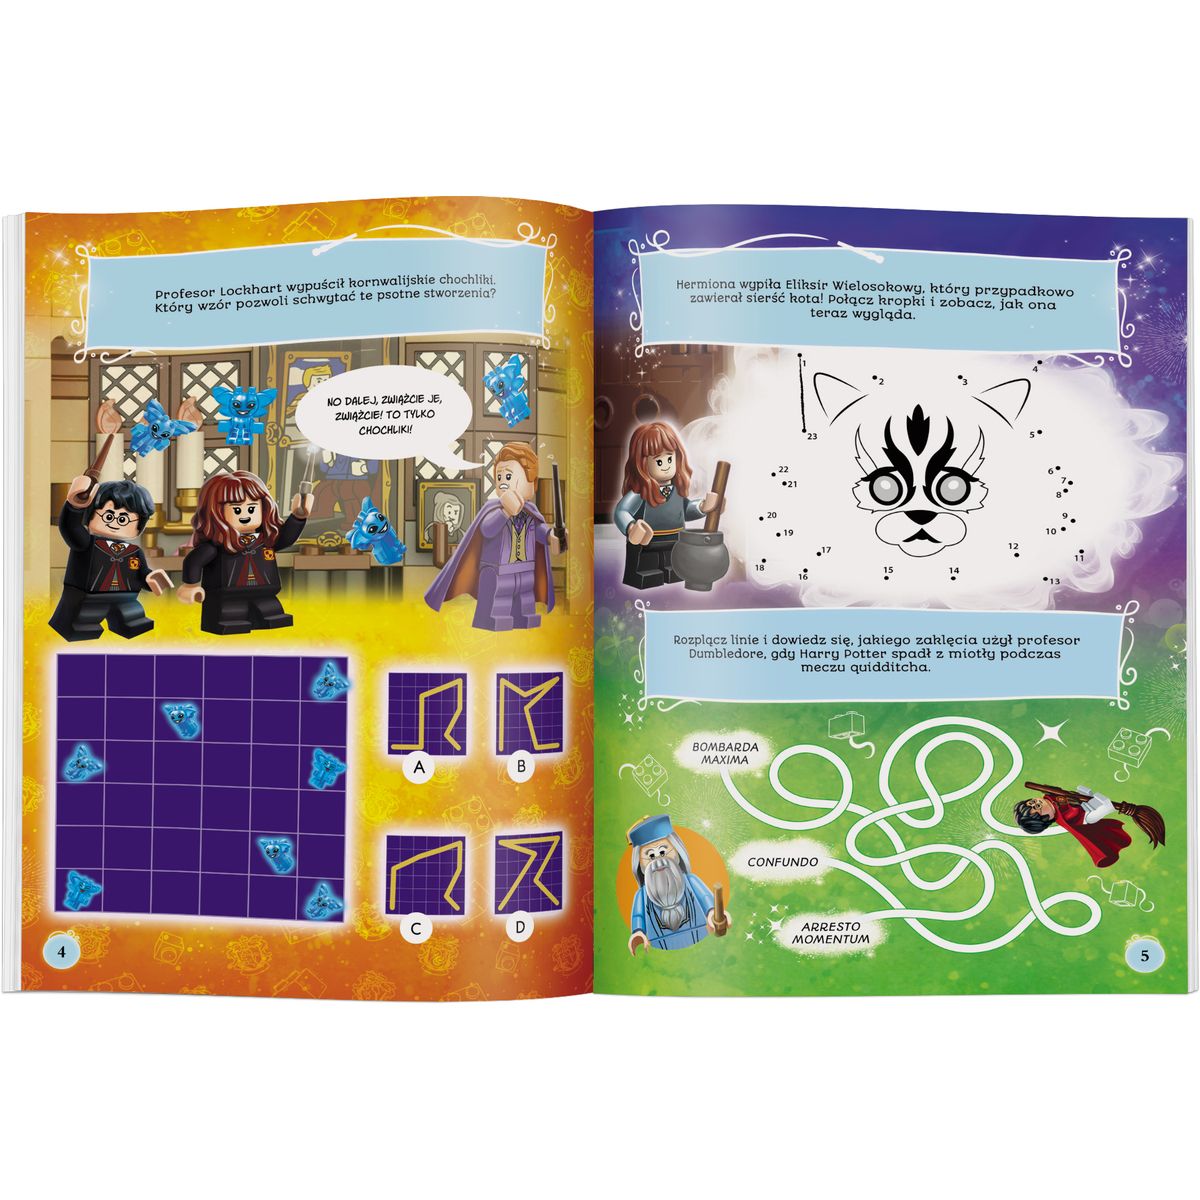 Książka dla dzieci LEGO® Harry Potter™. Czarownice rządzą! Ameet (LNC6410)